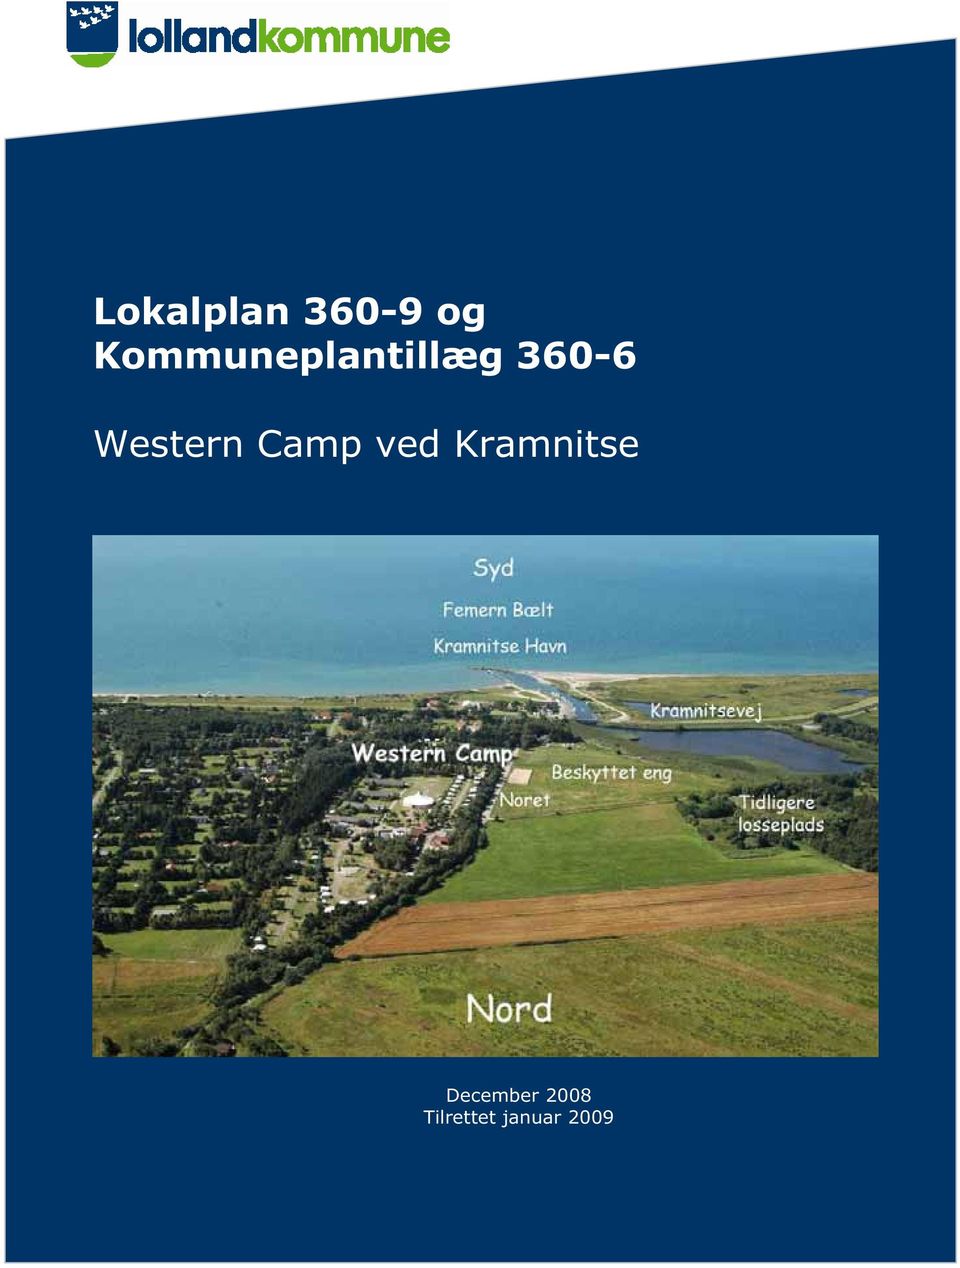 Western Camp ved Kramnitse